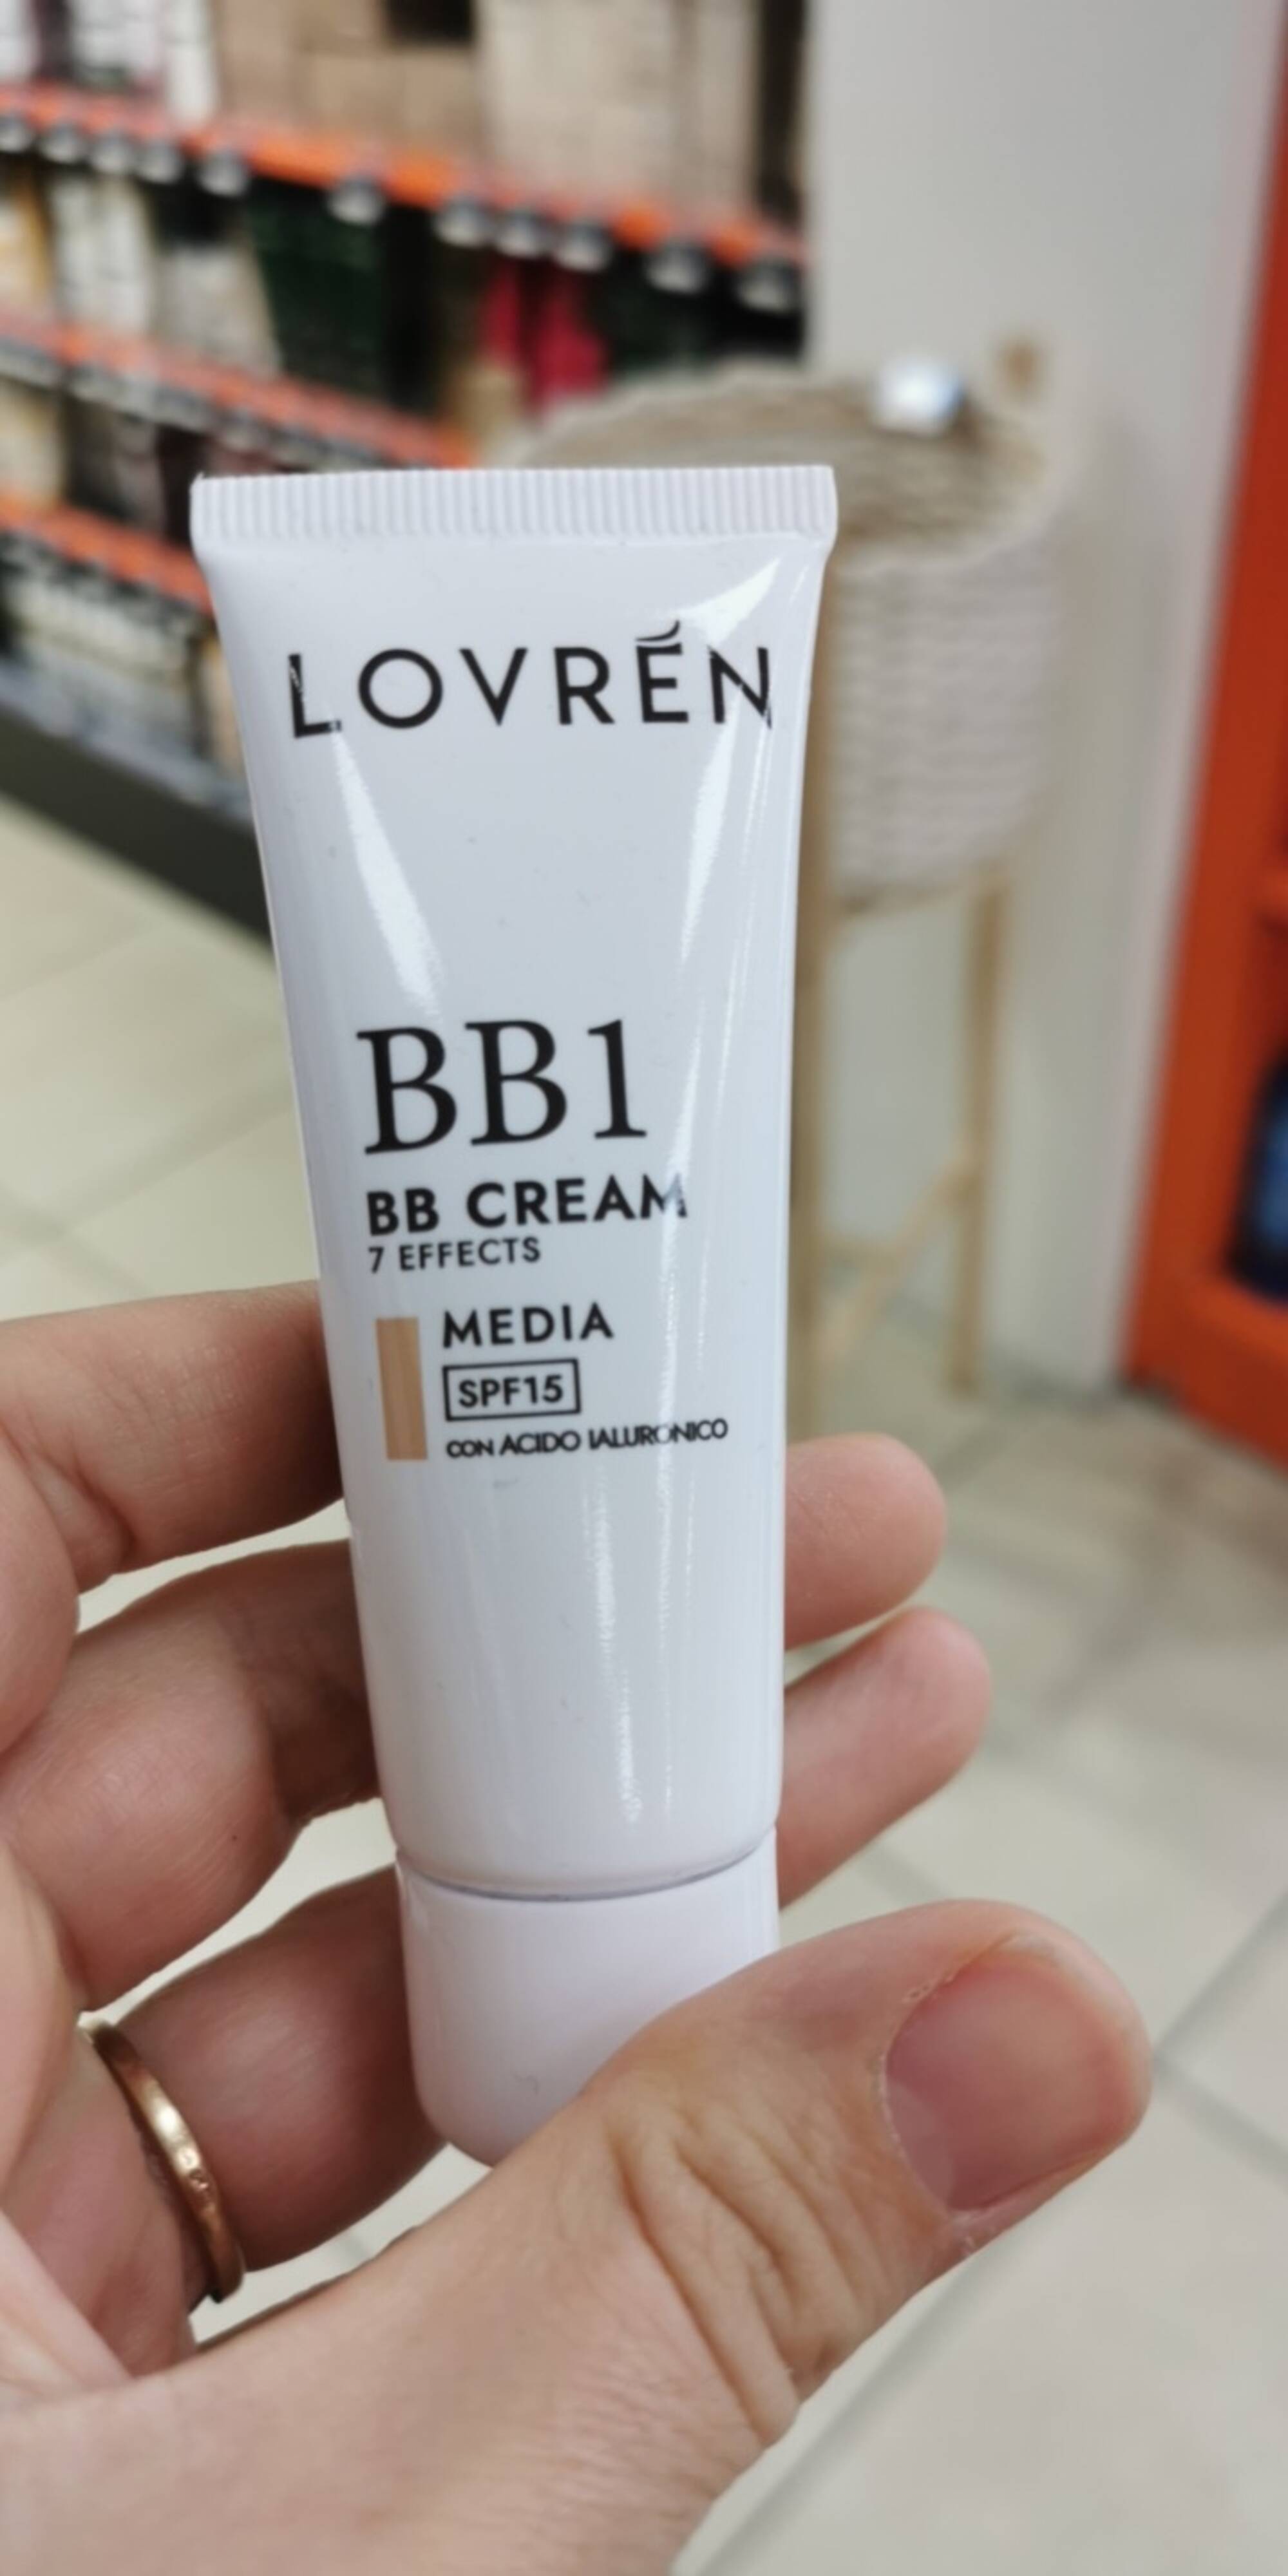 LOVREN - BB1 - BB cream SPF 15